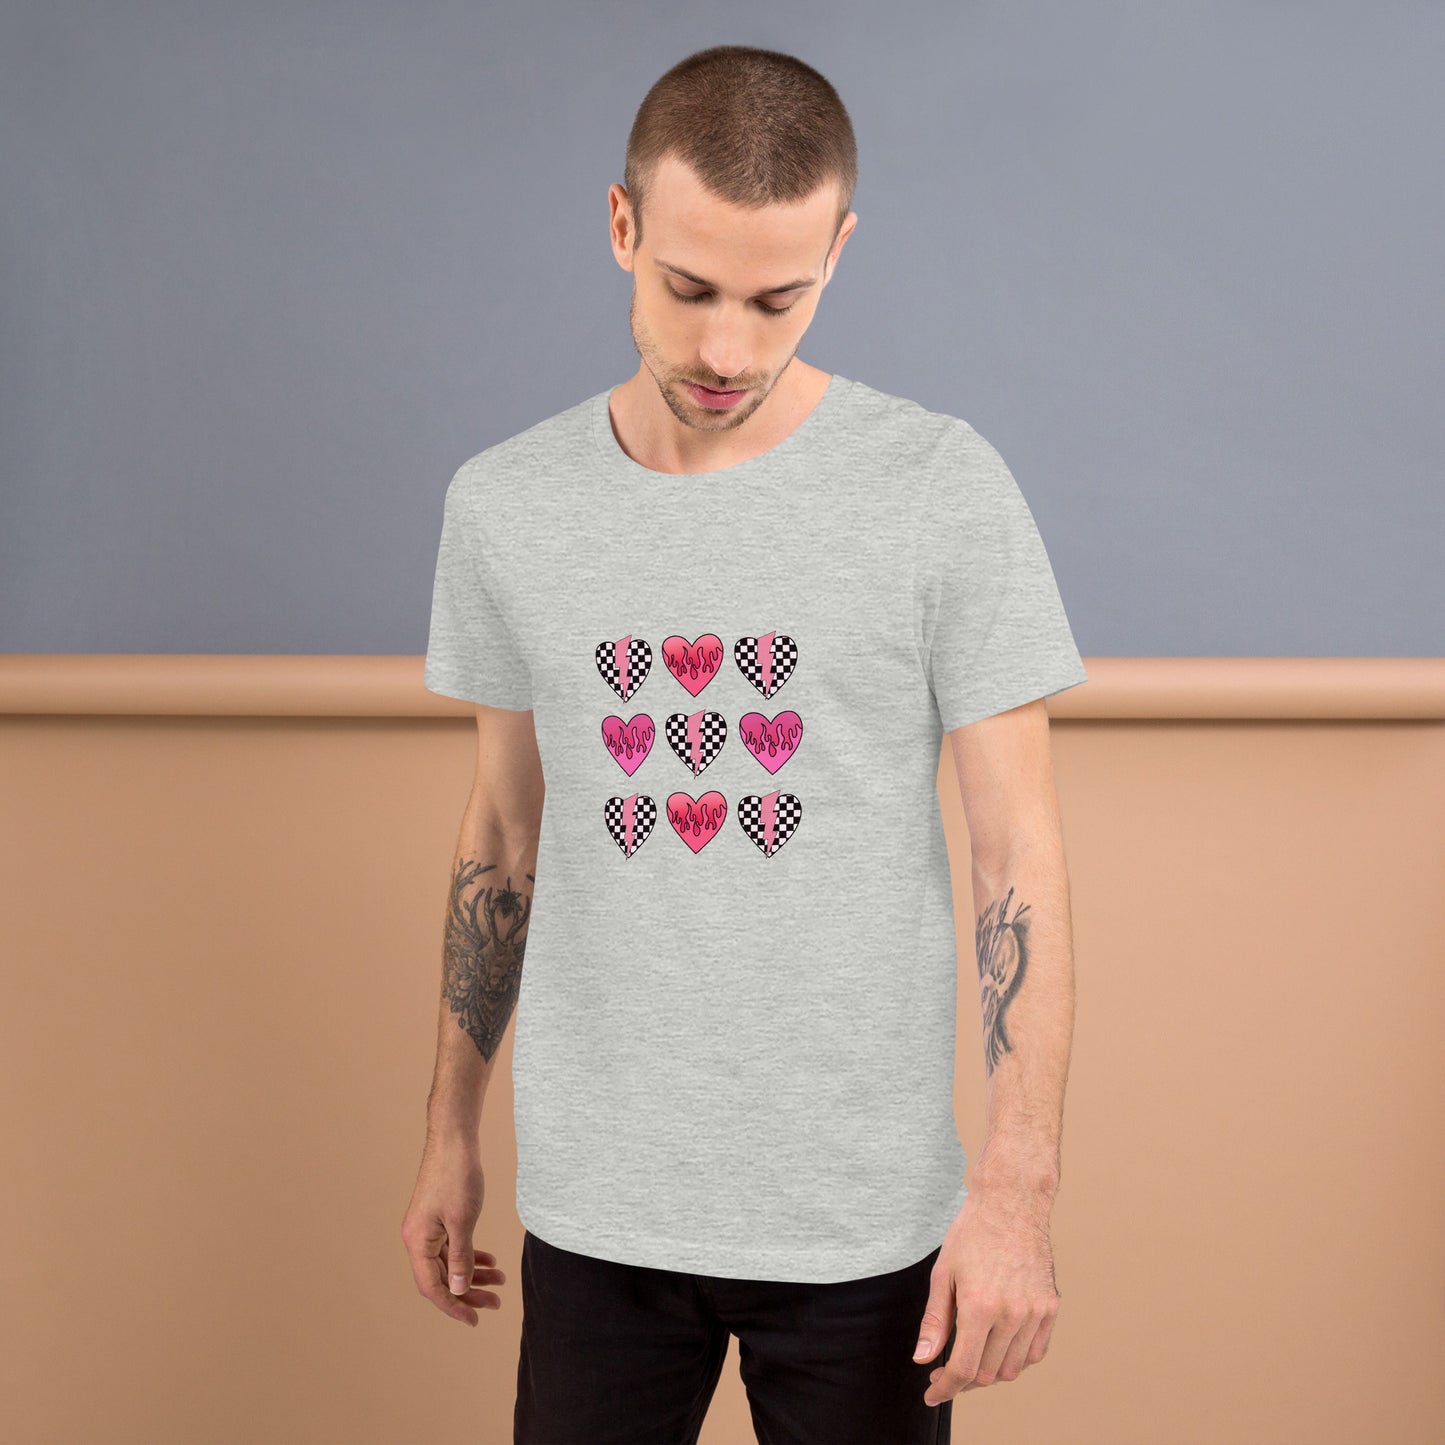 Checkered Heart Pattern Unisex t-shirt